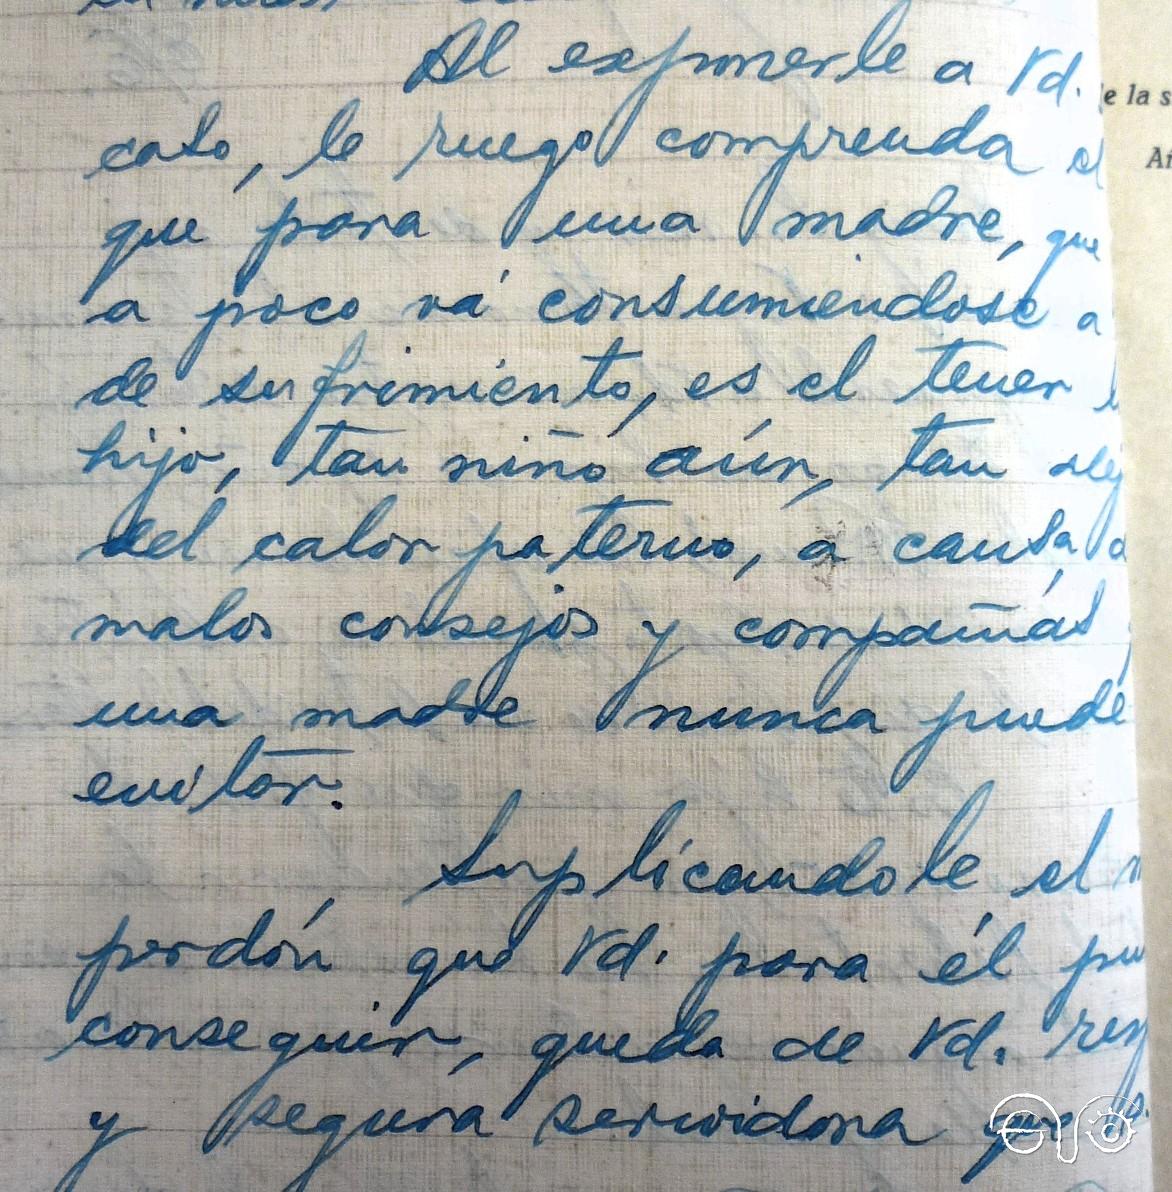 Carta de la madre de Luis (18/01/1937)